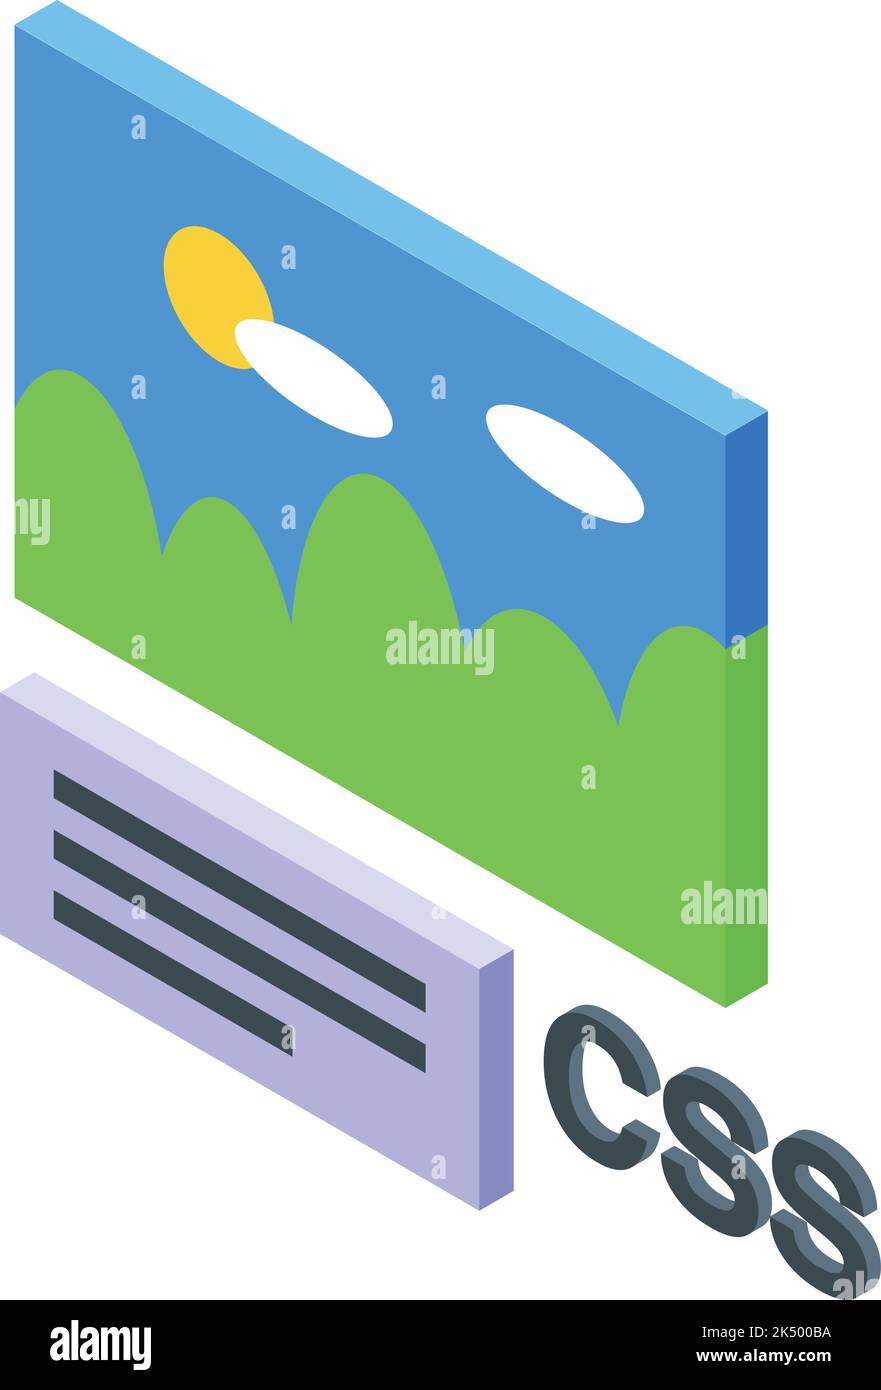 Vecteur isométrique de l'icône de développement CMS. Conception Web. Marketing logiciel Illustration de Vecteur